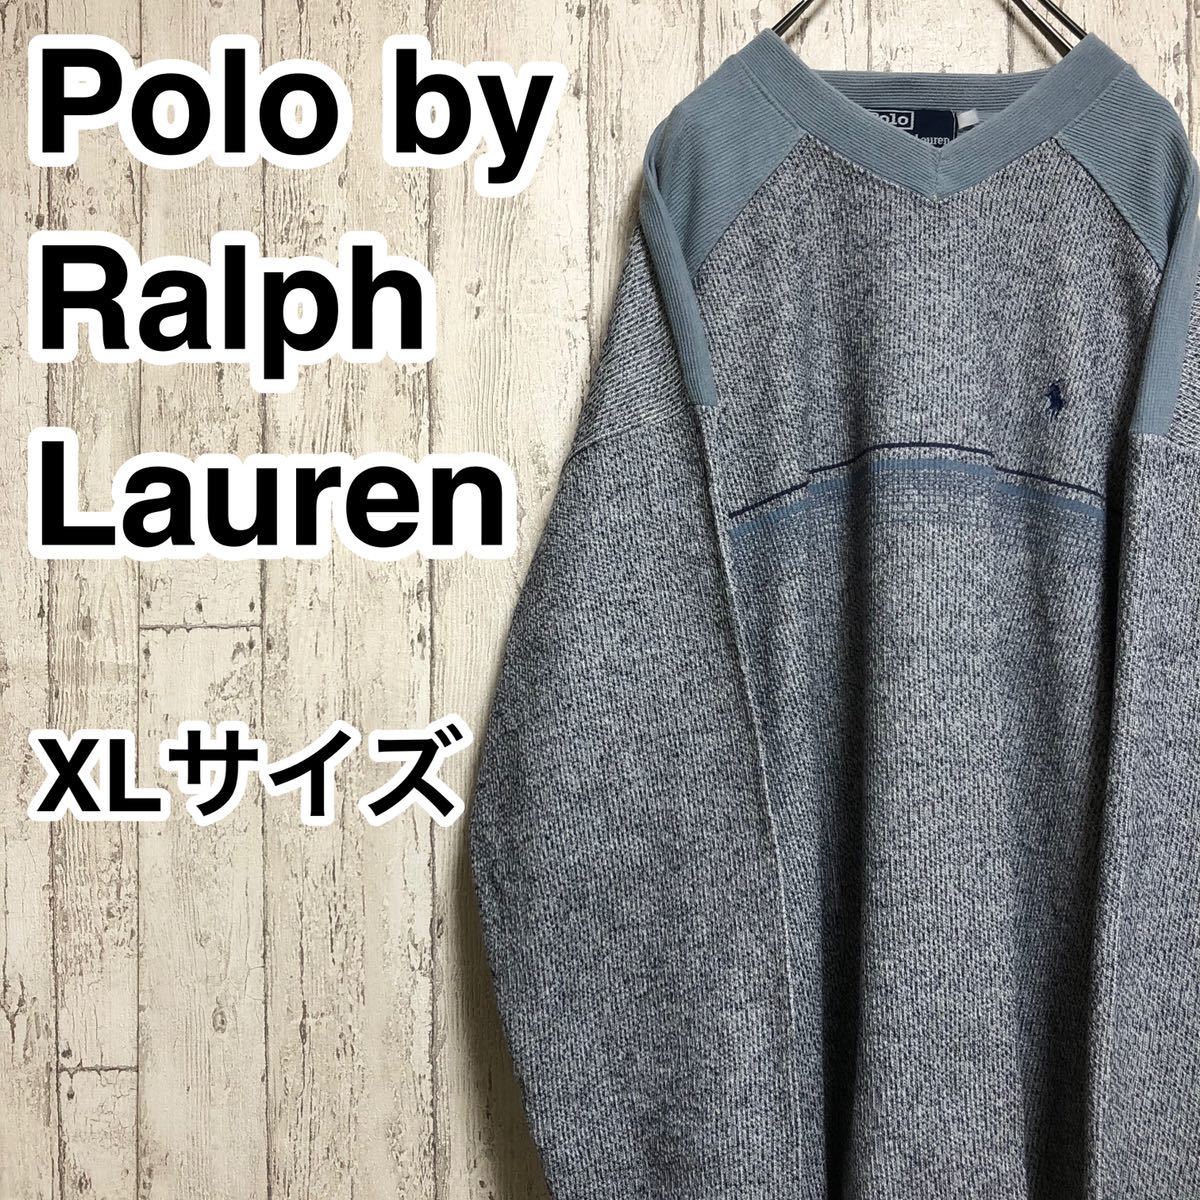 【廃盤商品】Polo by Ralph Lauren ポロバイラルフローレン ニット 杢グレー XLサイズ 刺繍ロゴ ブルーポニー